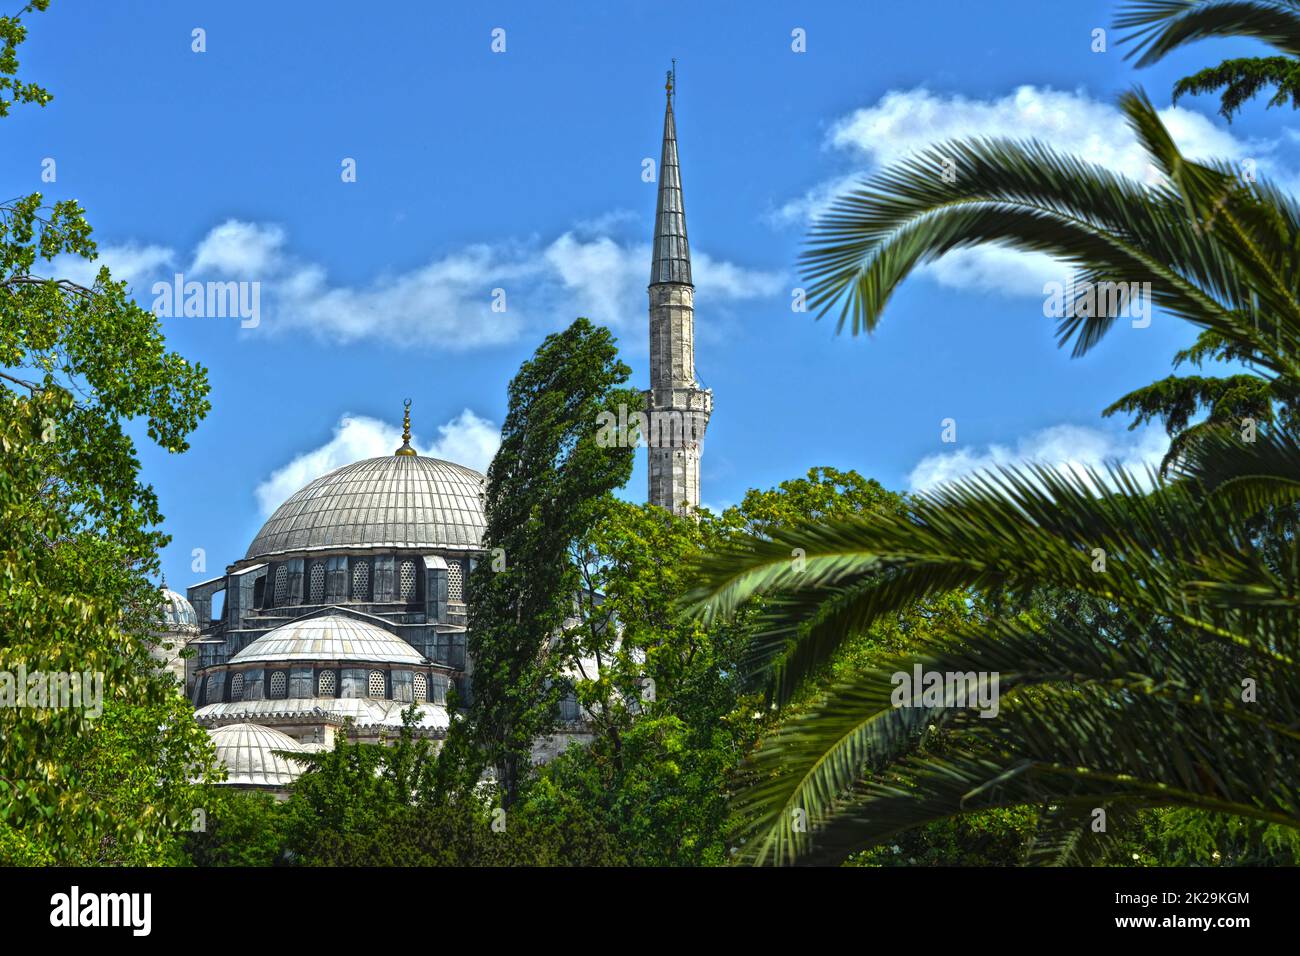 minareto sul tetto della moschea con cielo blu, nuvole e palme Foto Stock